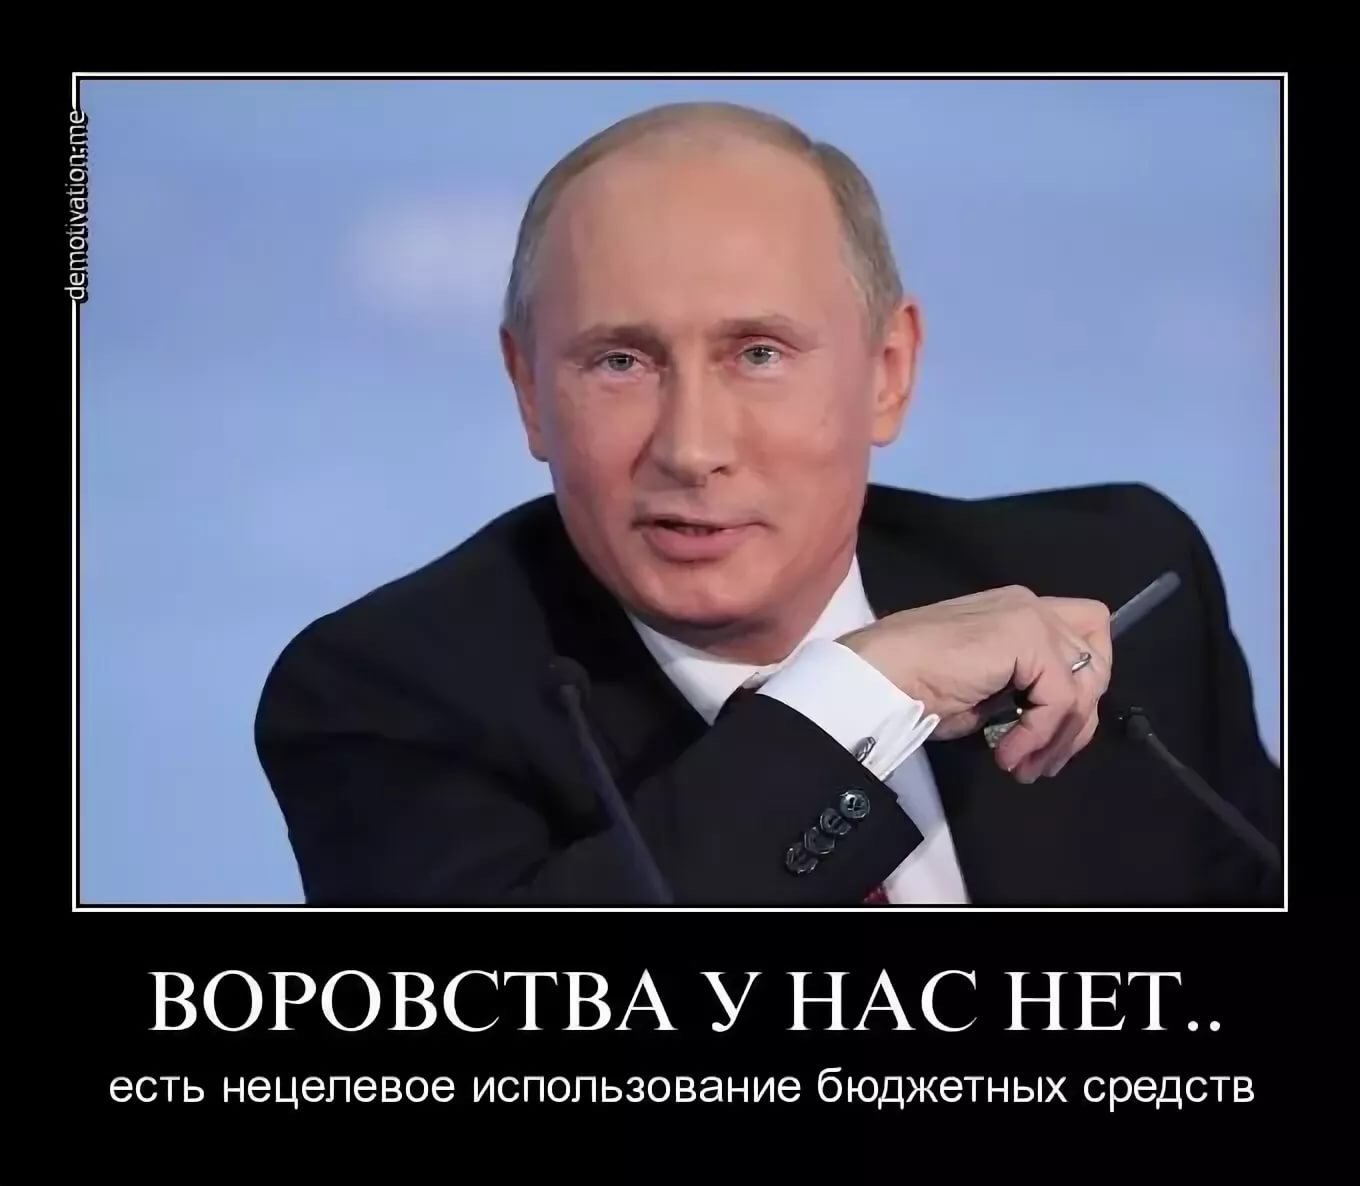 Цене было не просто. В России воруют. Демотиваторы против Путина. Мемы про Путина.